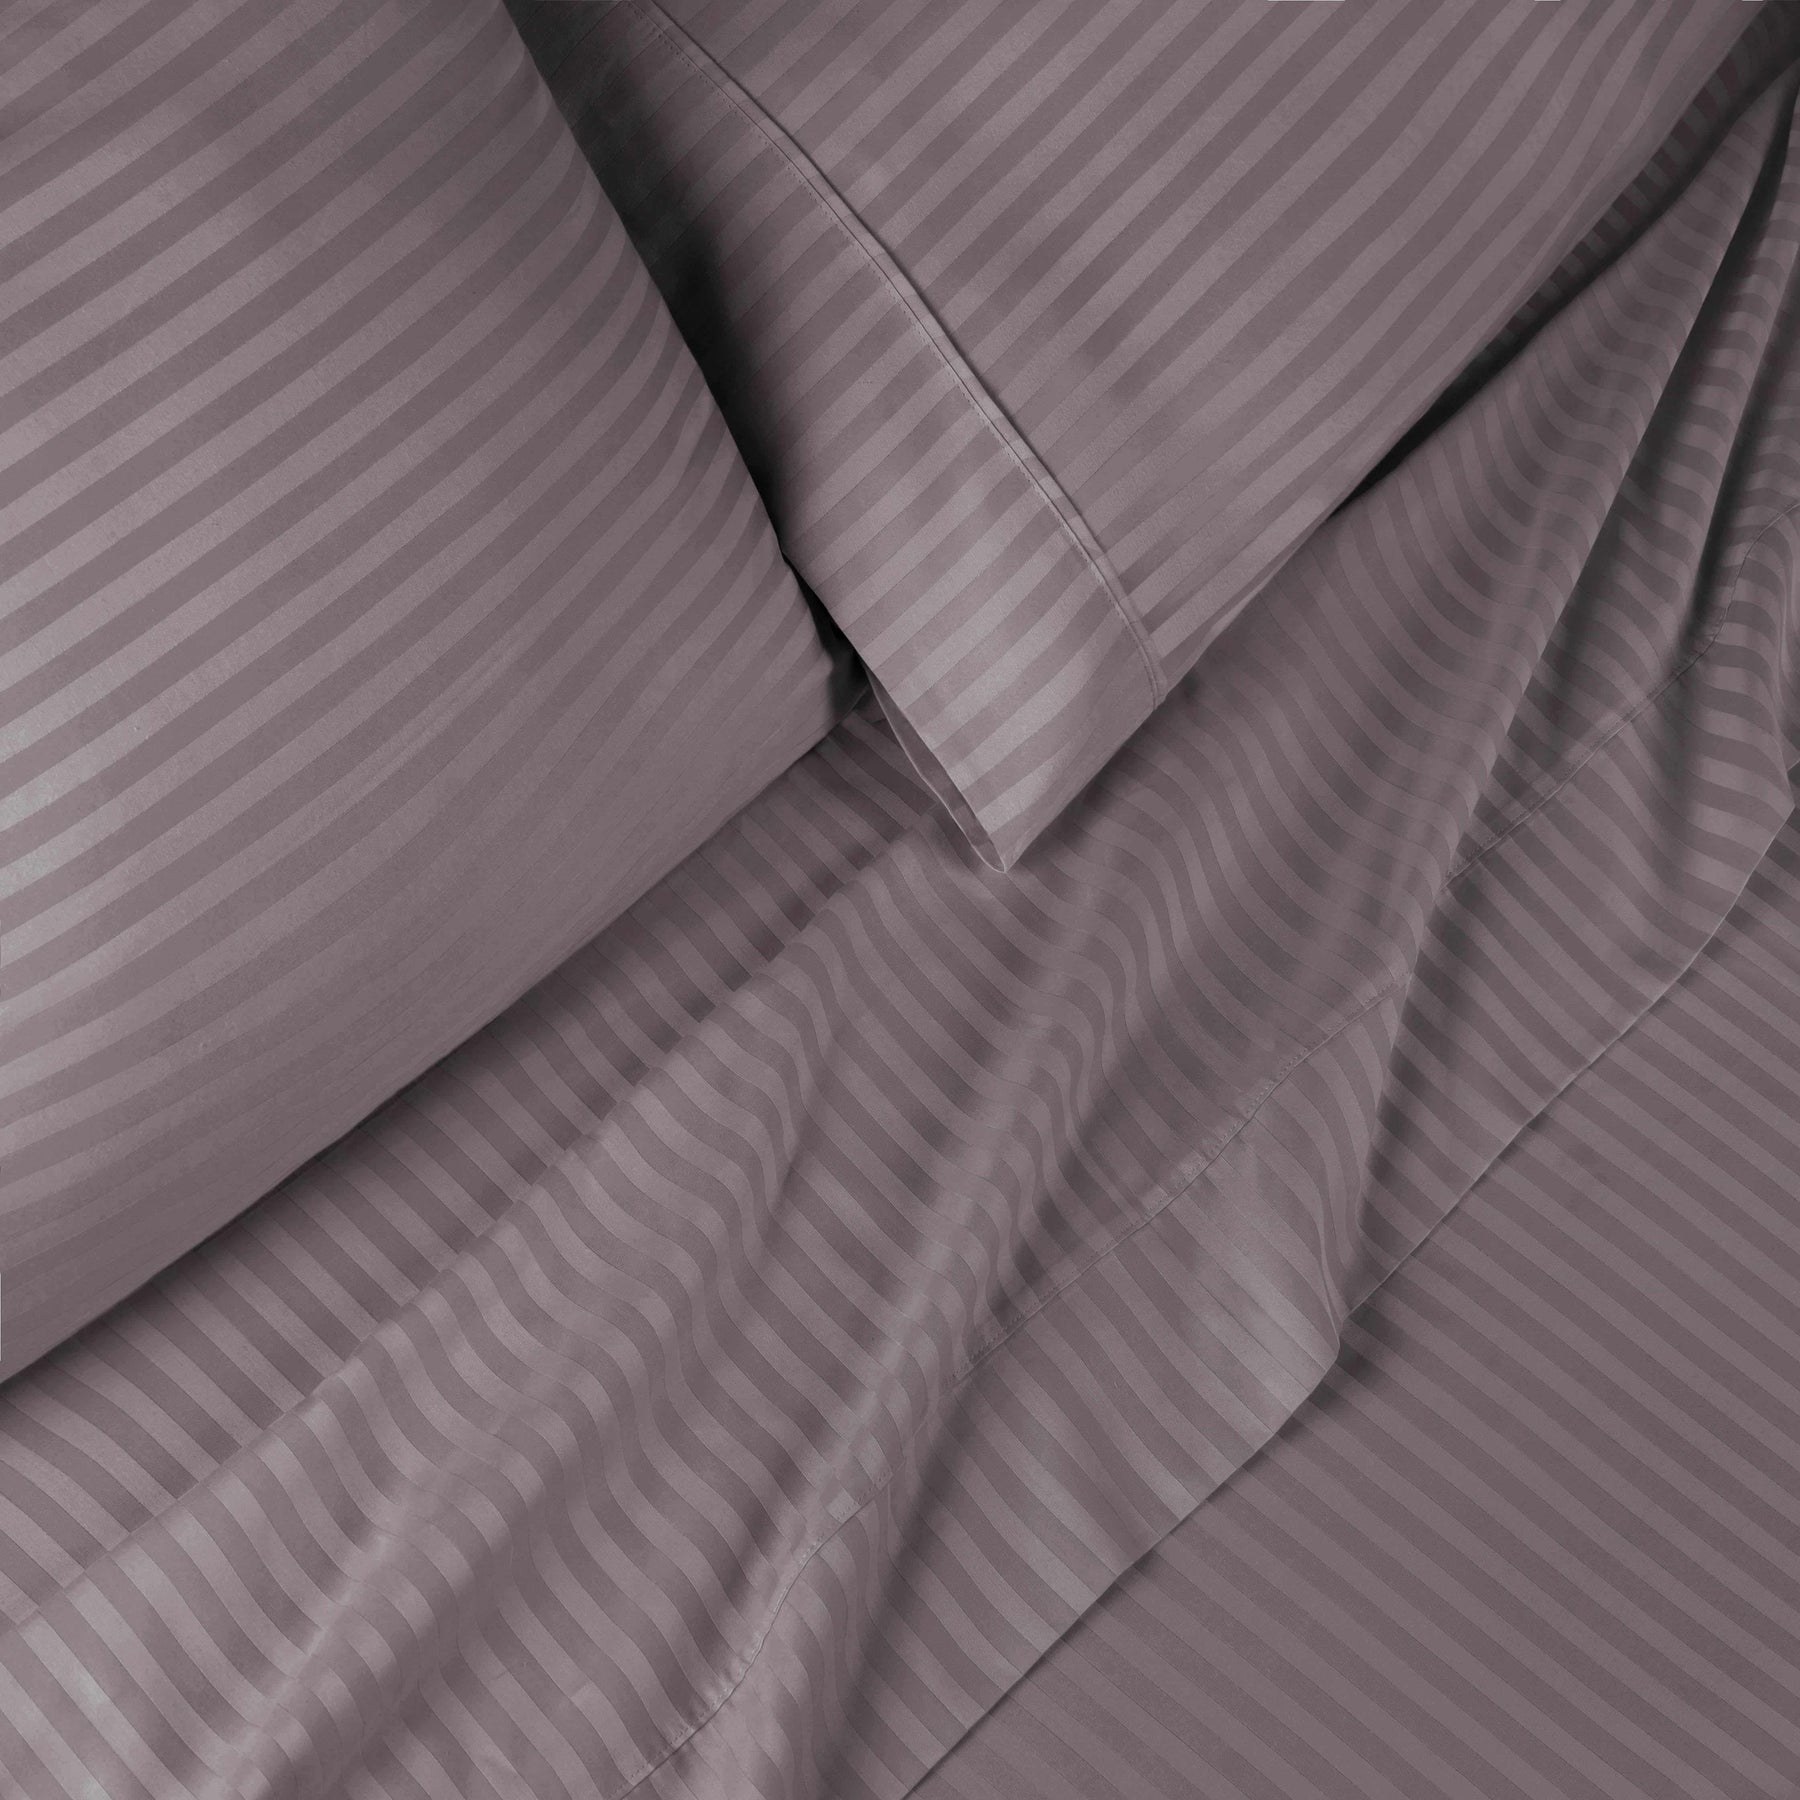 Superior 300 Thread-Count Premium Egyptian Cotton Stripe Sheet Set - Grey